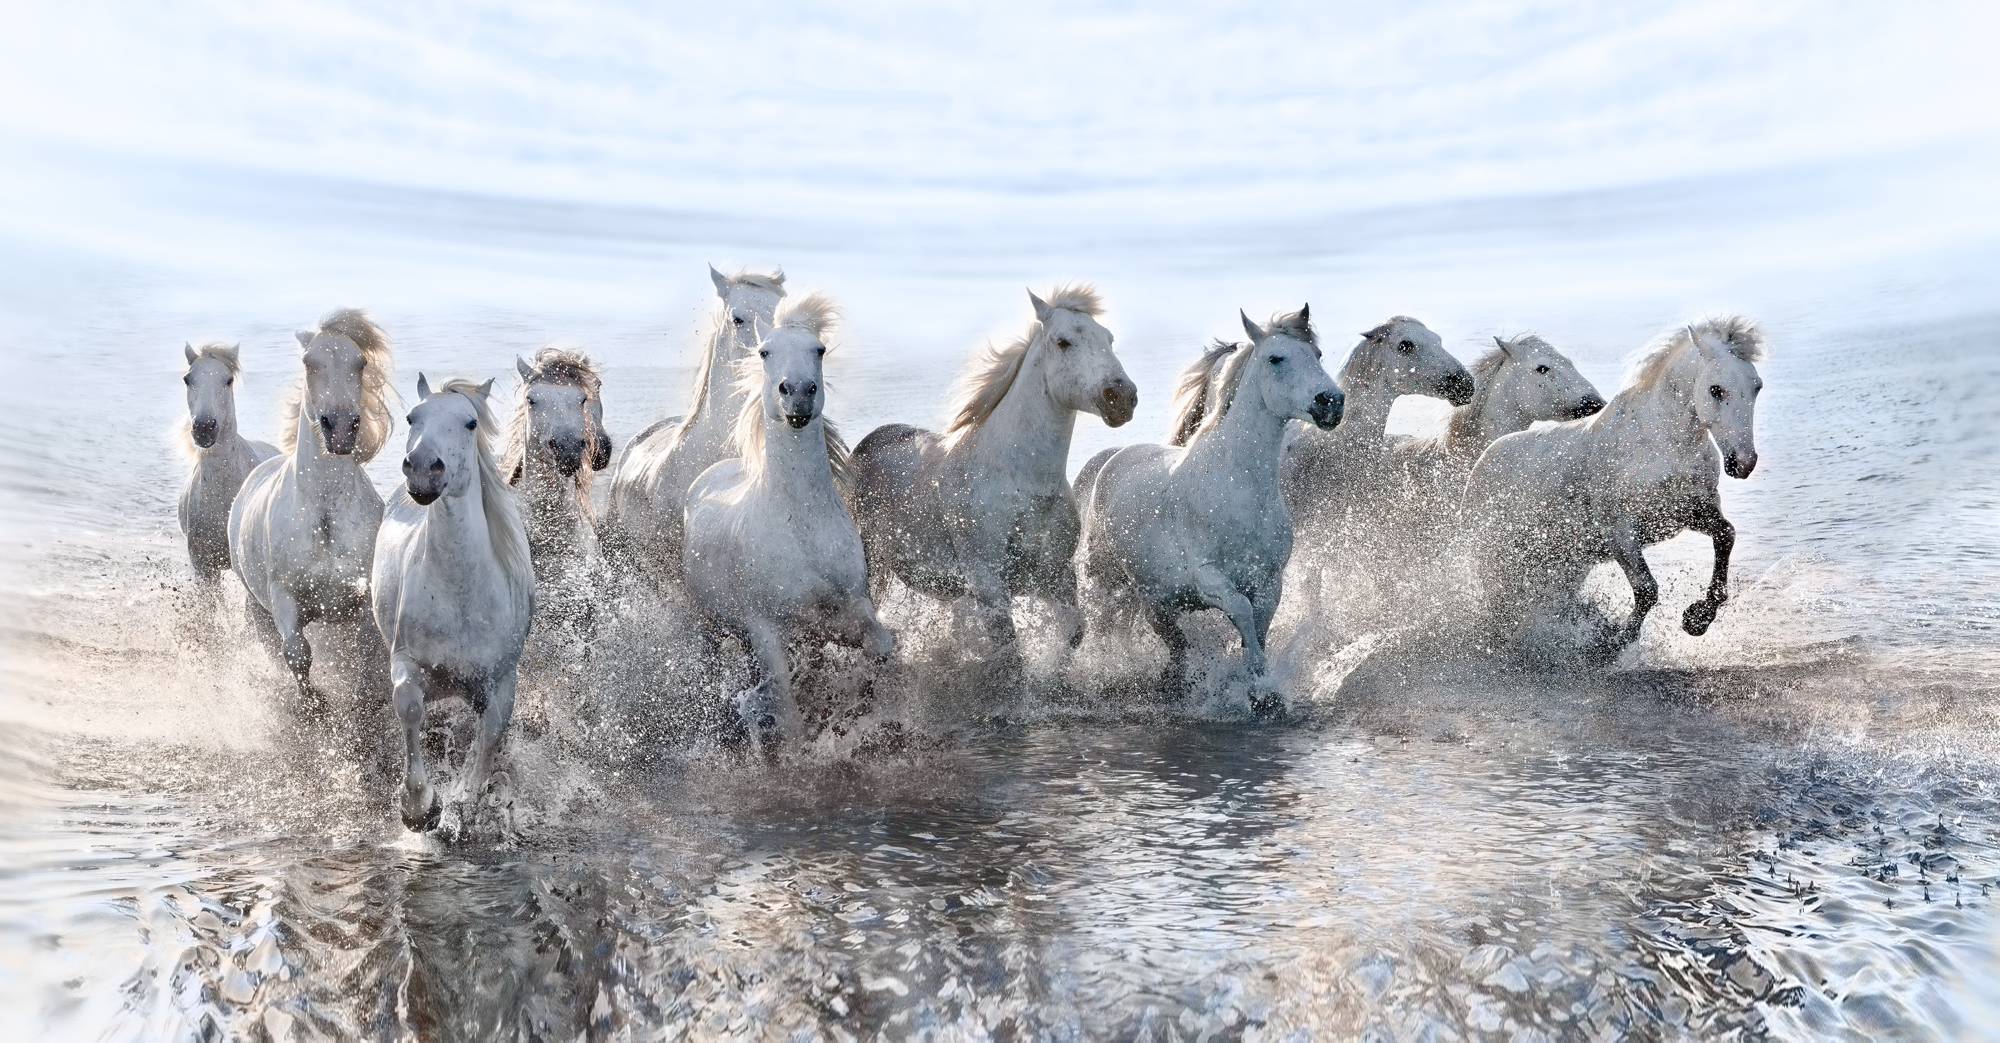 Λευκά άλογα φωτογραφίζονται στις όχθες της θάλασσας